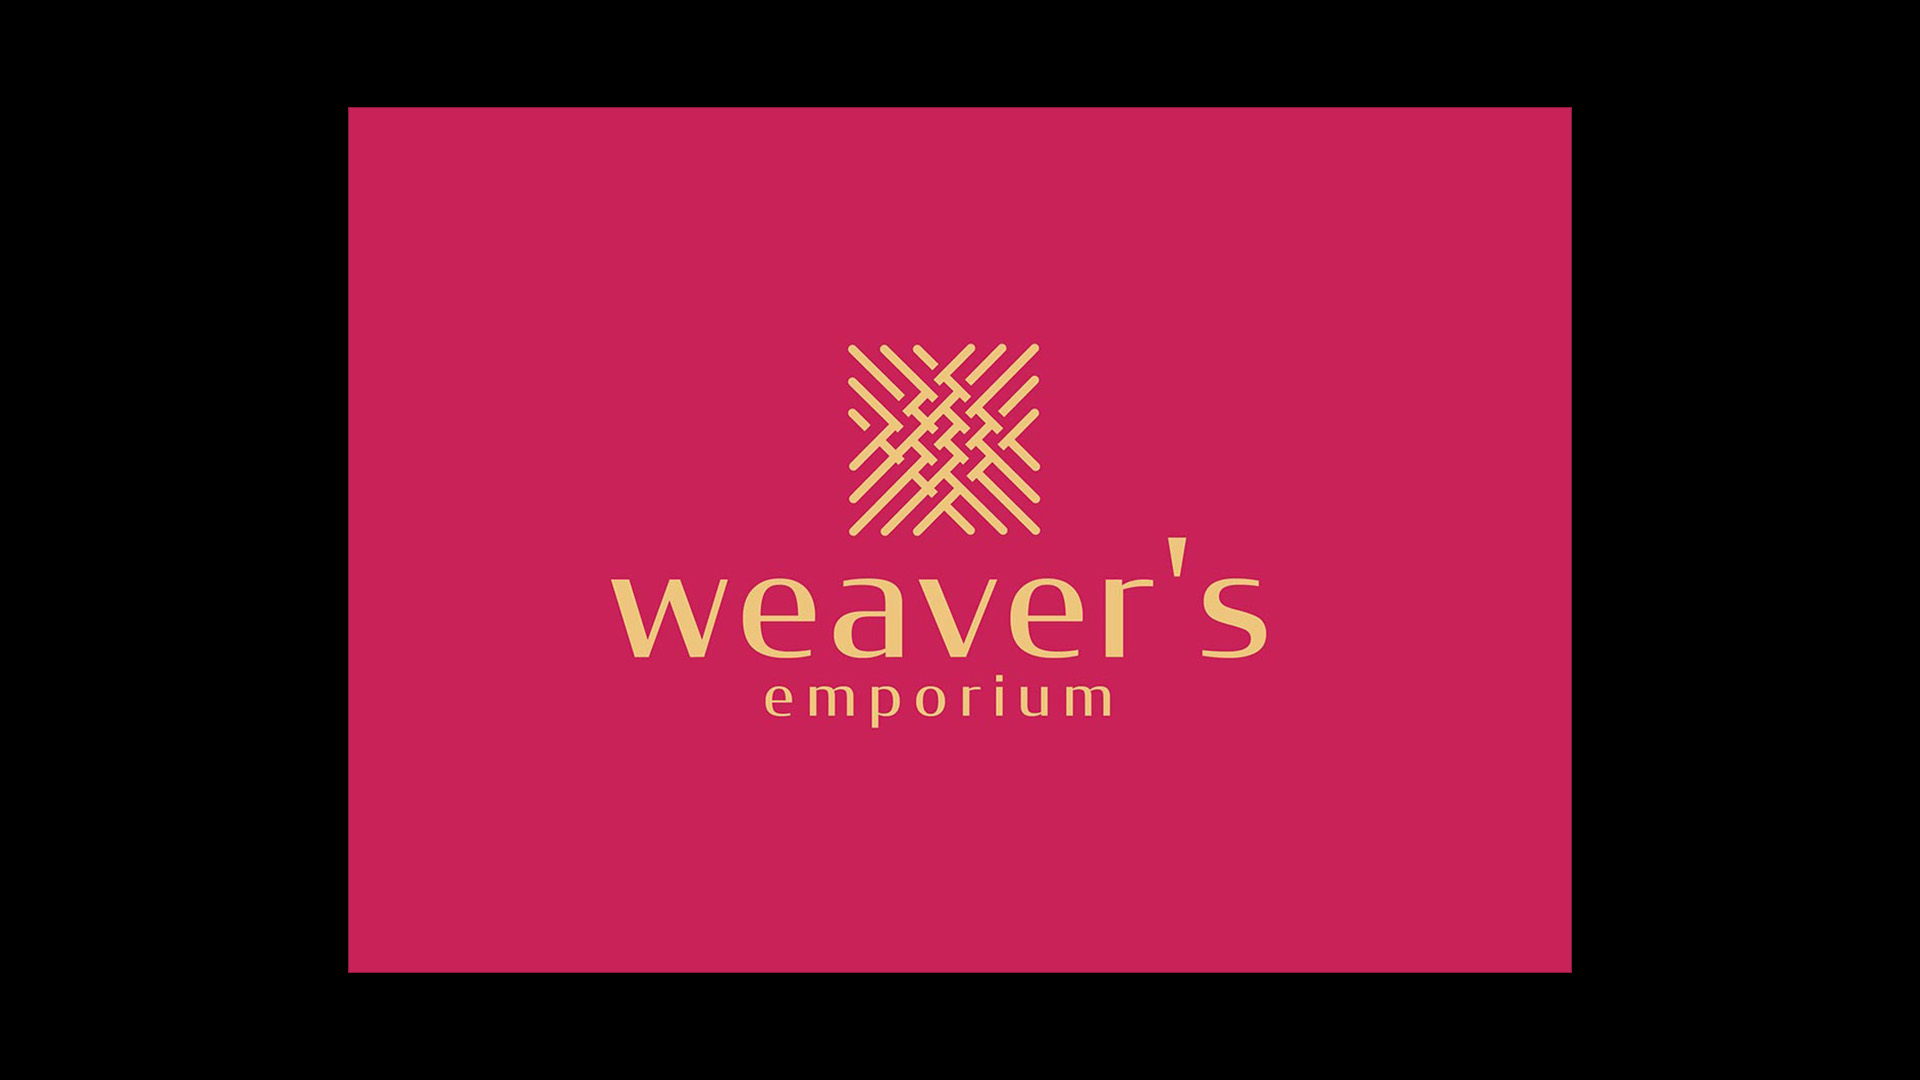 Weavers Emporium